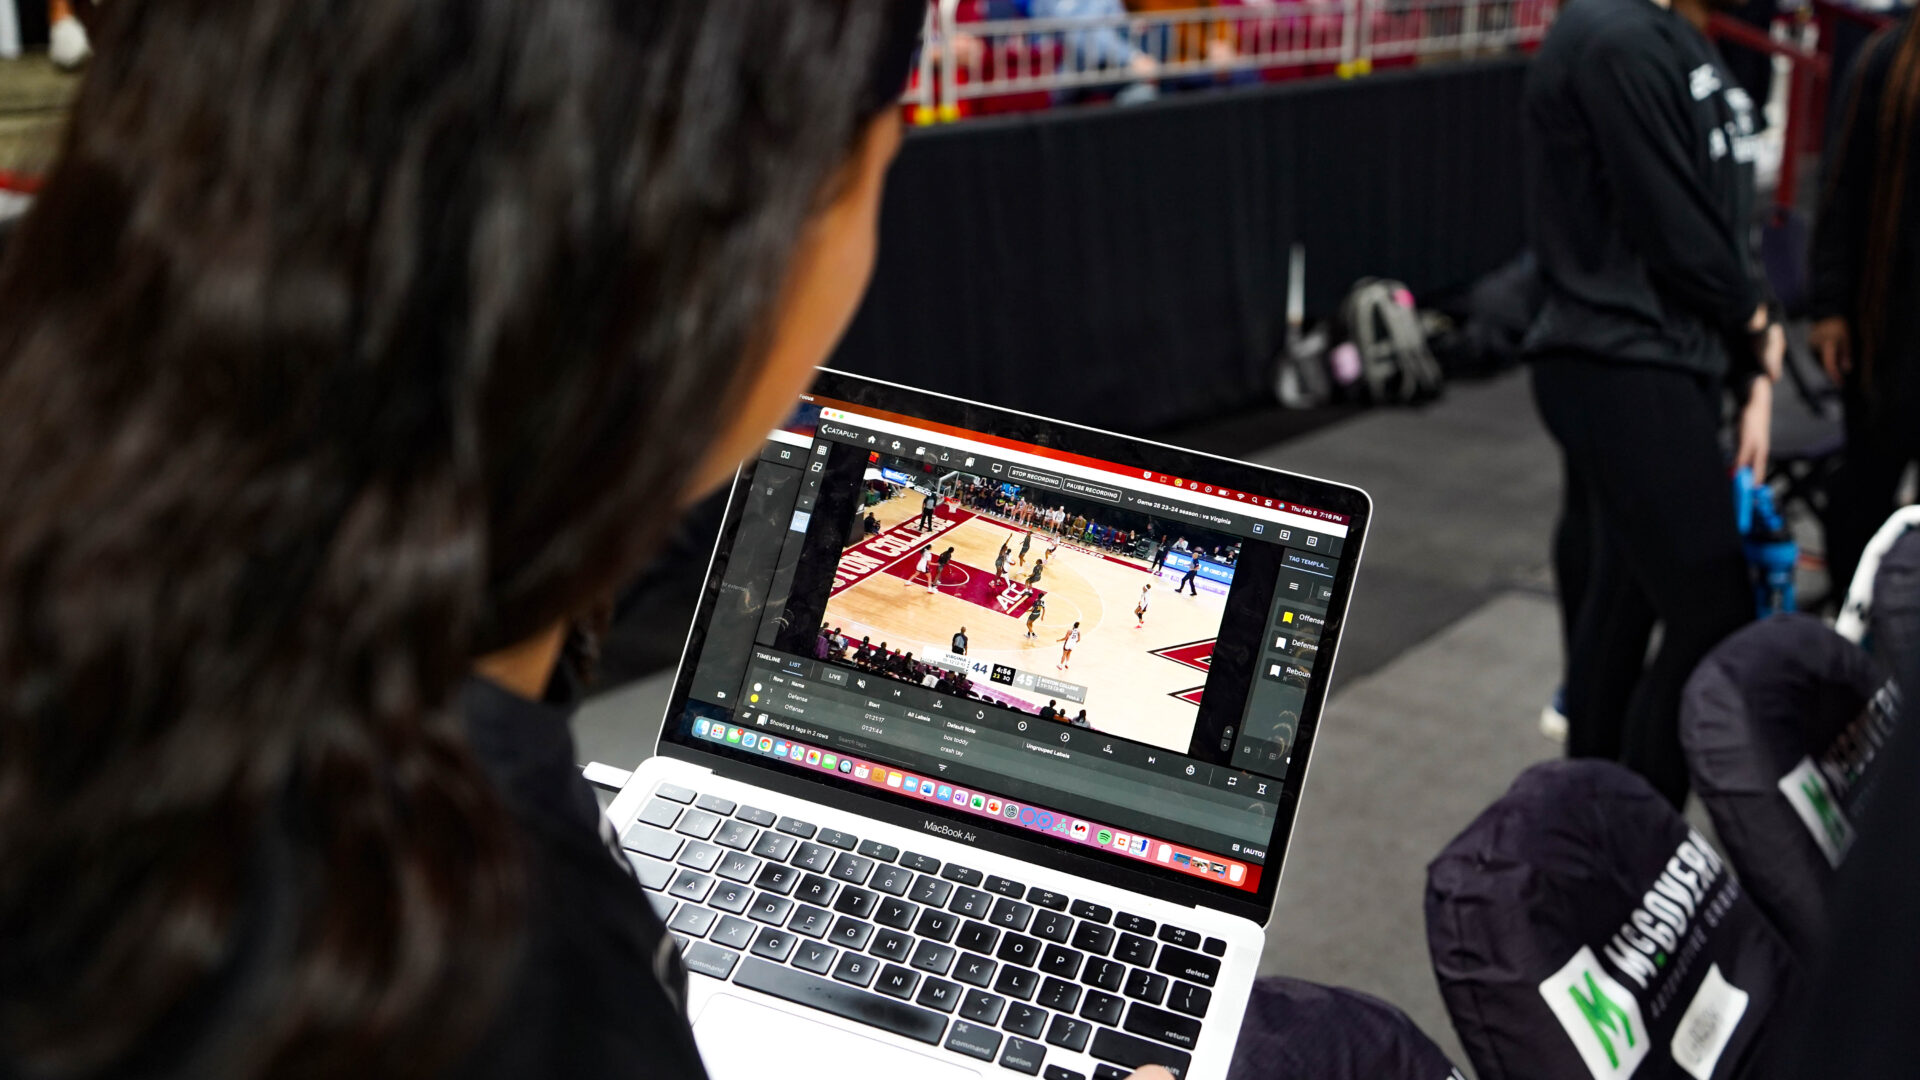 波士顿学院篮球运动员和教练之间正在进行集中互动，笔记本电脑屏幕上可以看到专业视频焦点分析。这凸显了实时视频分析在训练中的整合，这对于提高表现和游戏战术至关重要。